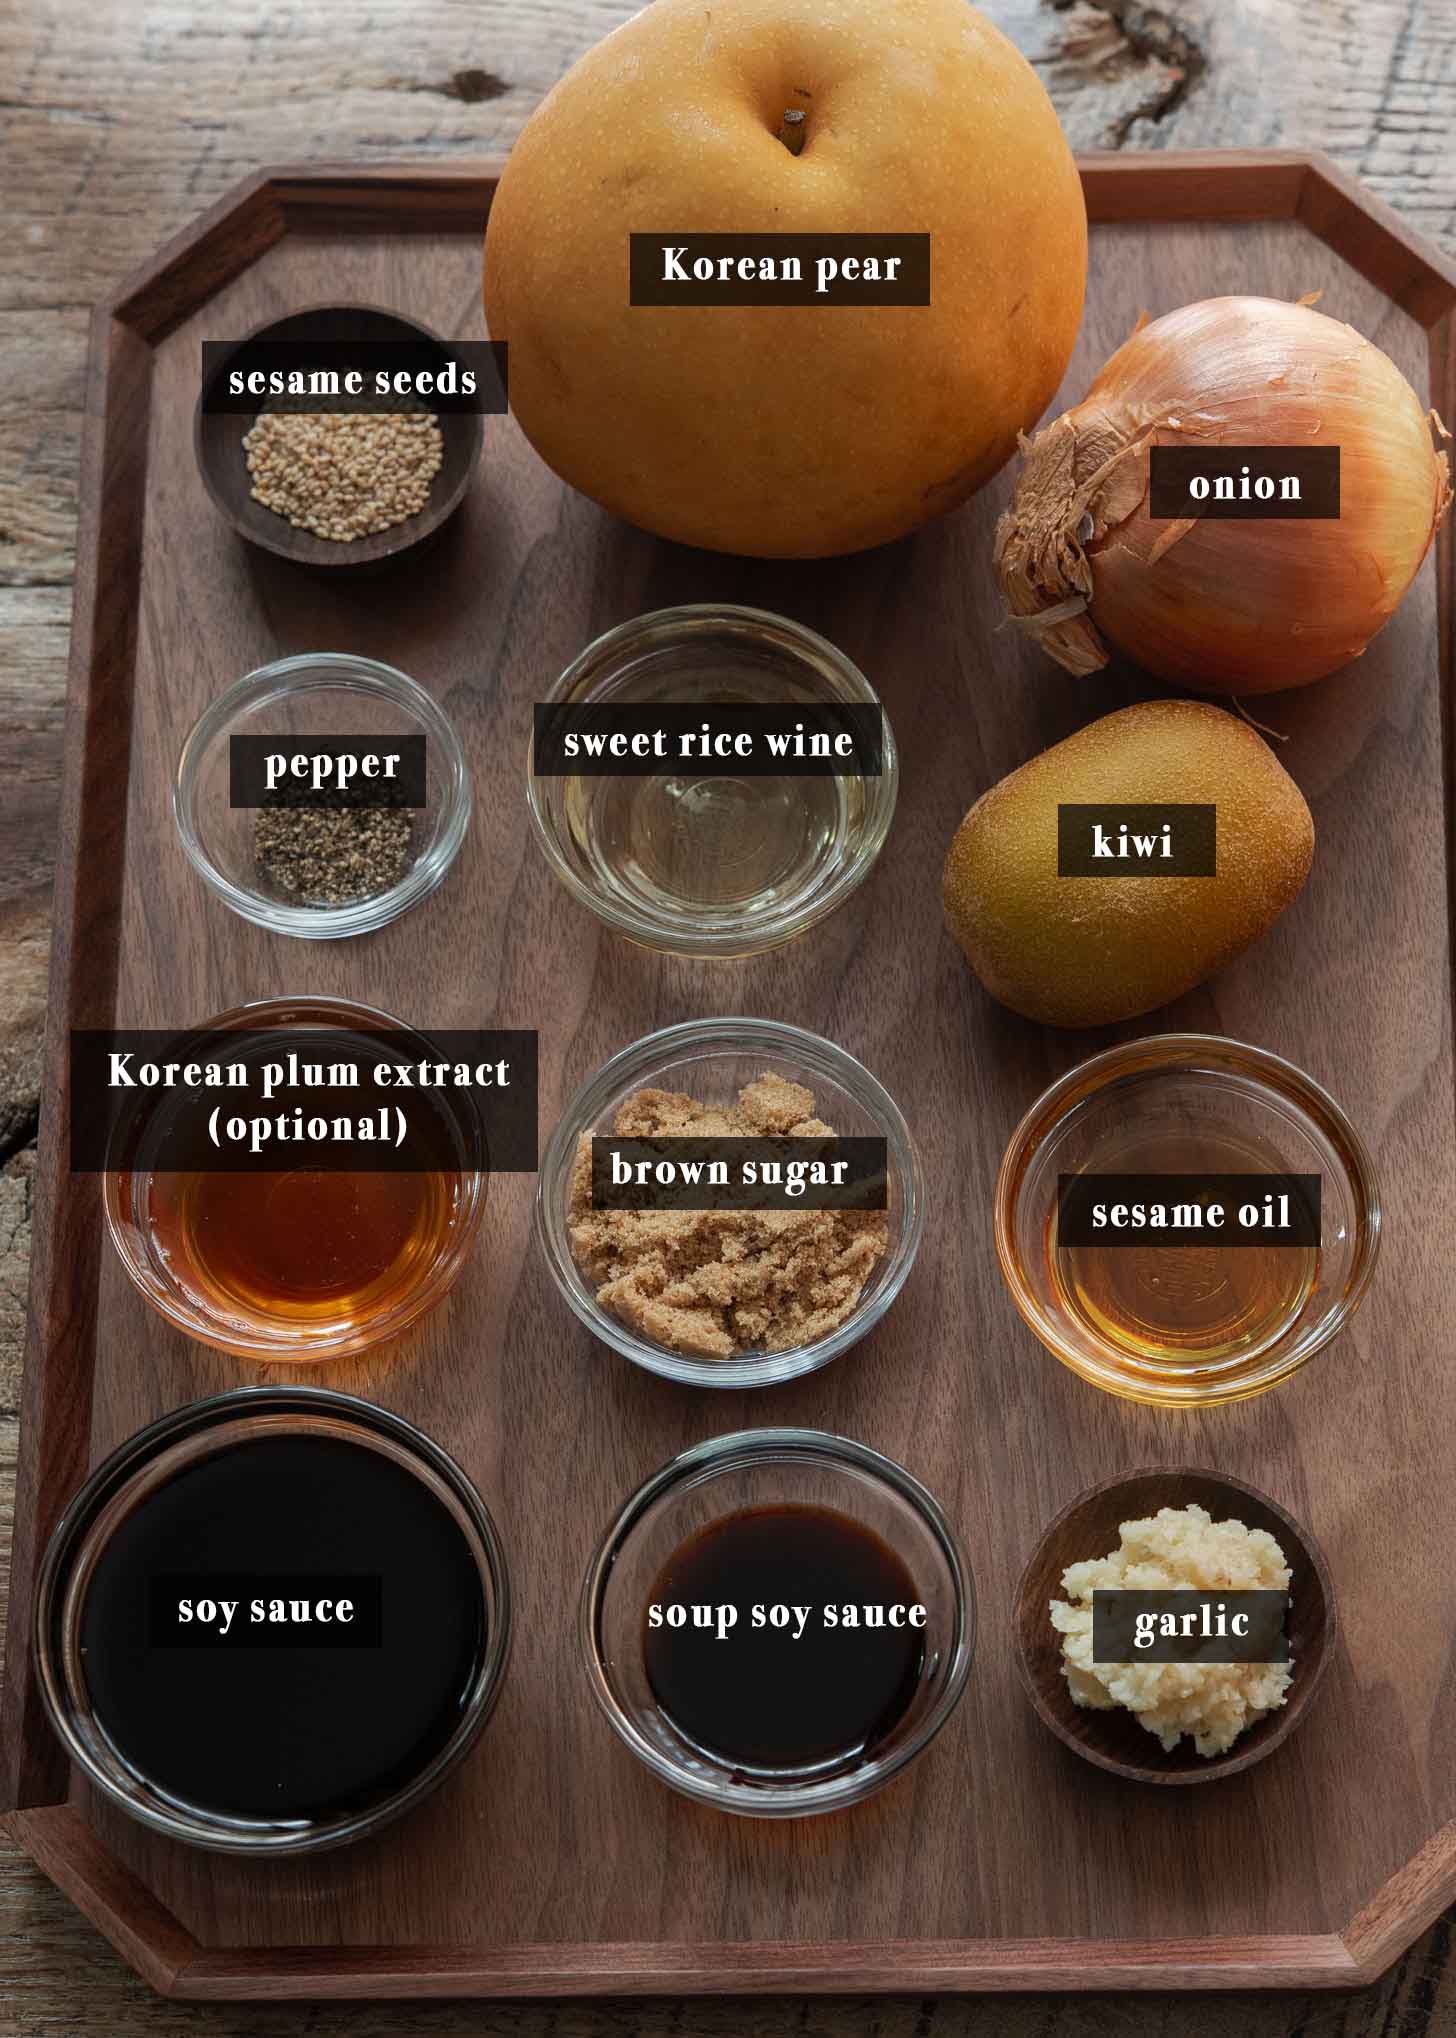 Ingredients for making bulgogi marinade.